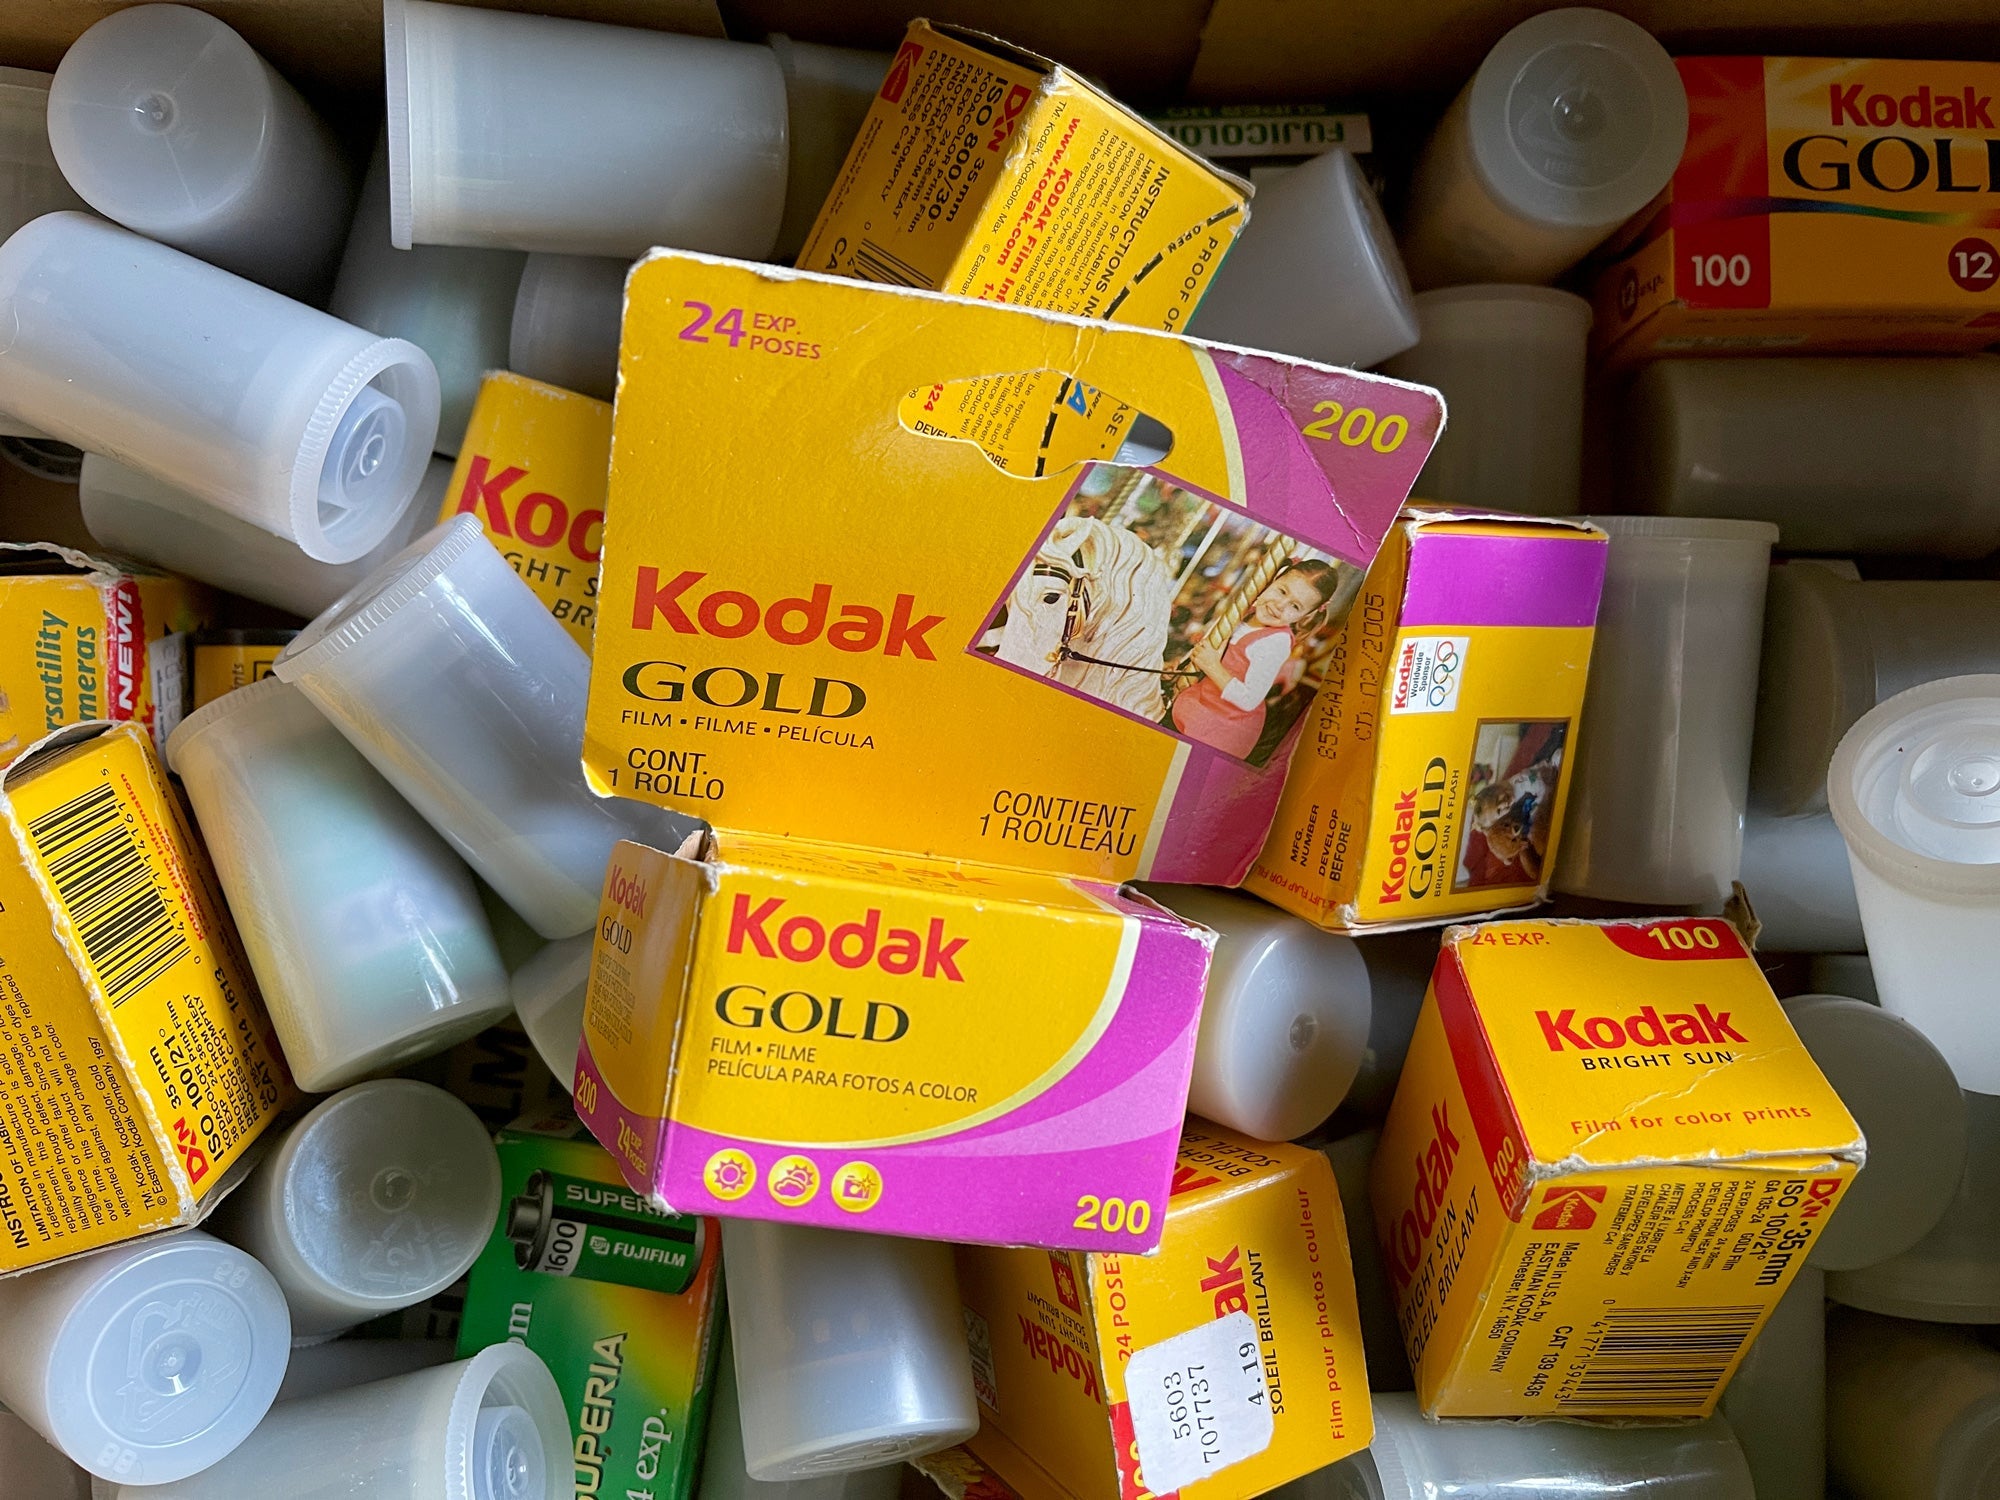 Boxes of Kodak film.